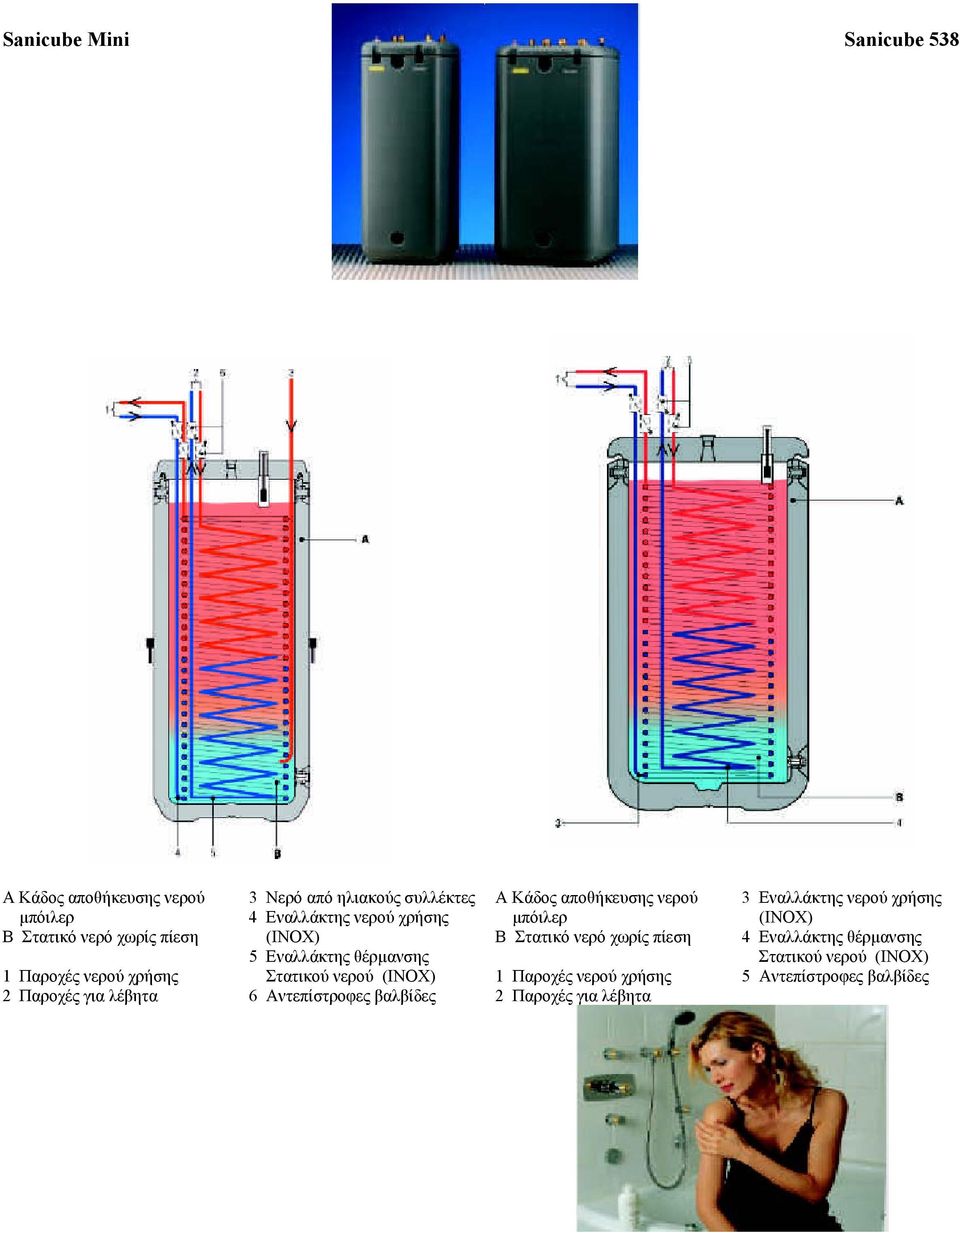 νερό χωρίς πίεση 4 Εναλλάκτης θέρµανσης 5 Εναλλάκτης θέρµανσης Στατικού νερού (INOX) 1 Παροχές νερού χρήσης Στατικού